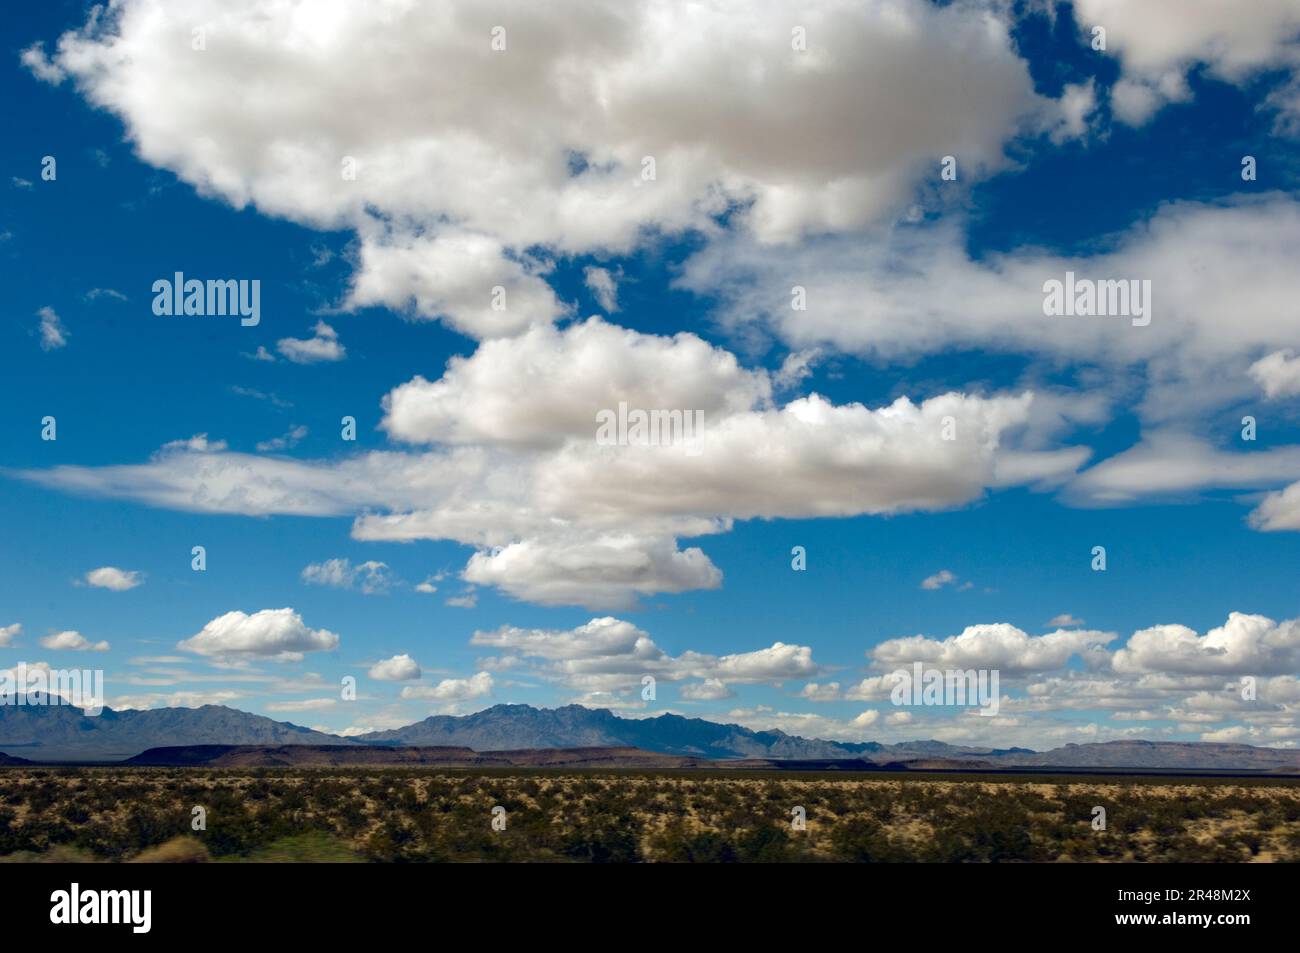 Nuages bouffis et grands espaces ouverts dans le paysage occidental près de Flagstaff, Arizona, États-Unis Banque D'Images